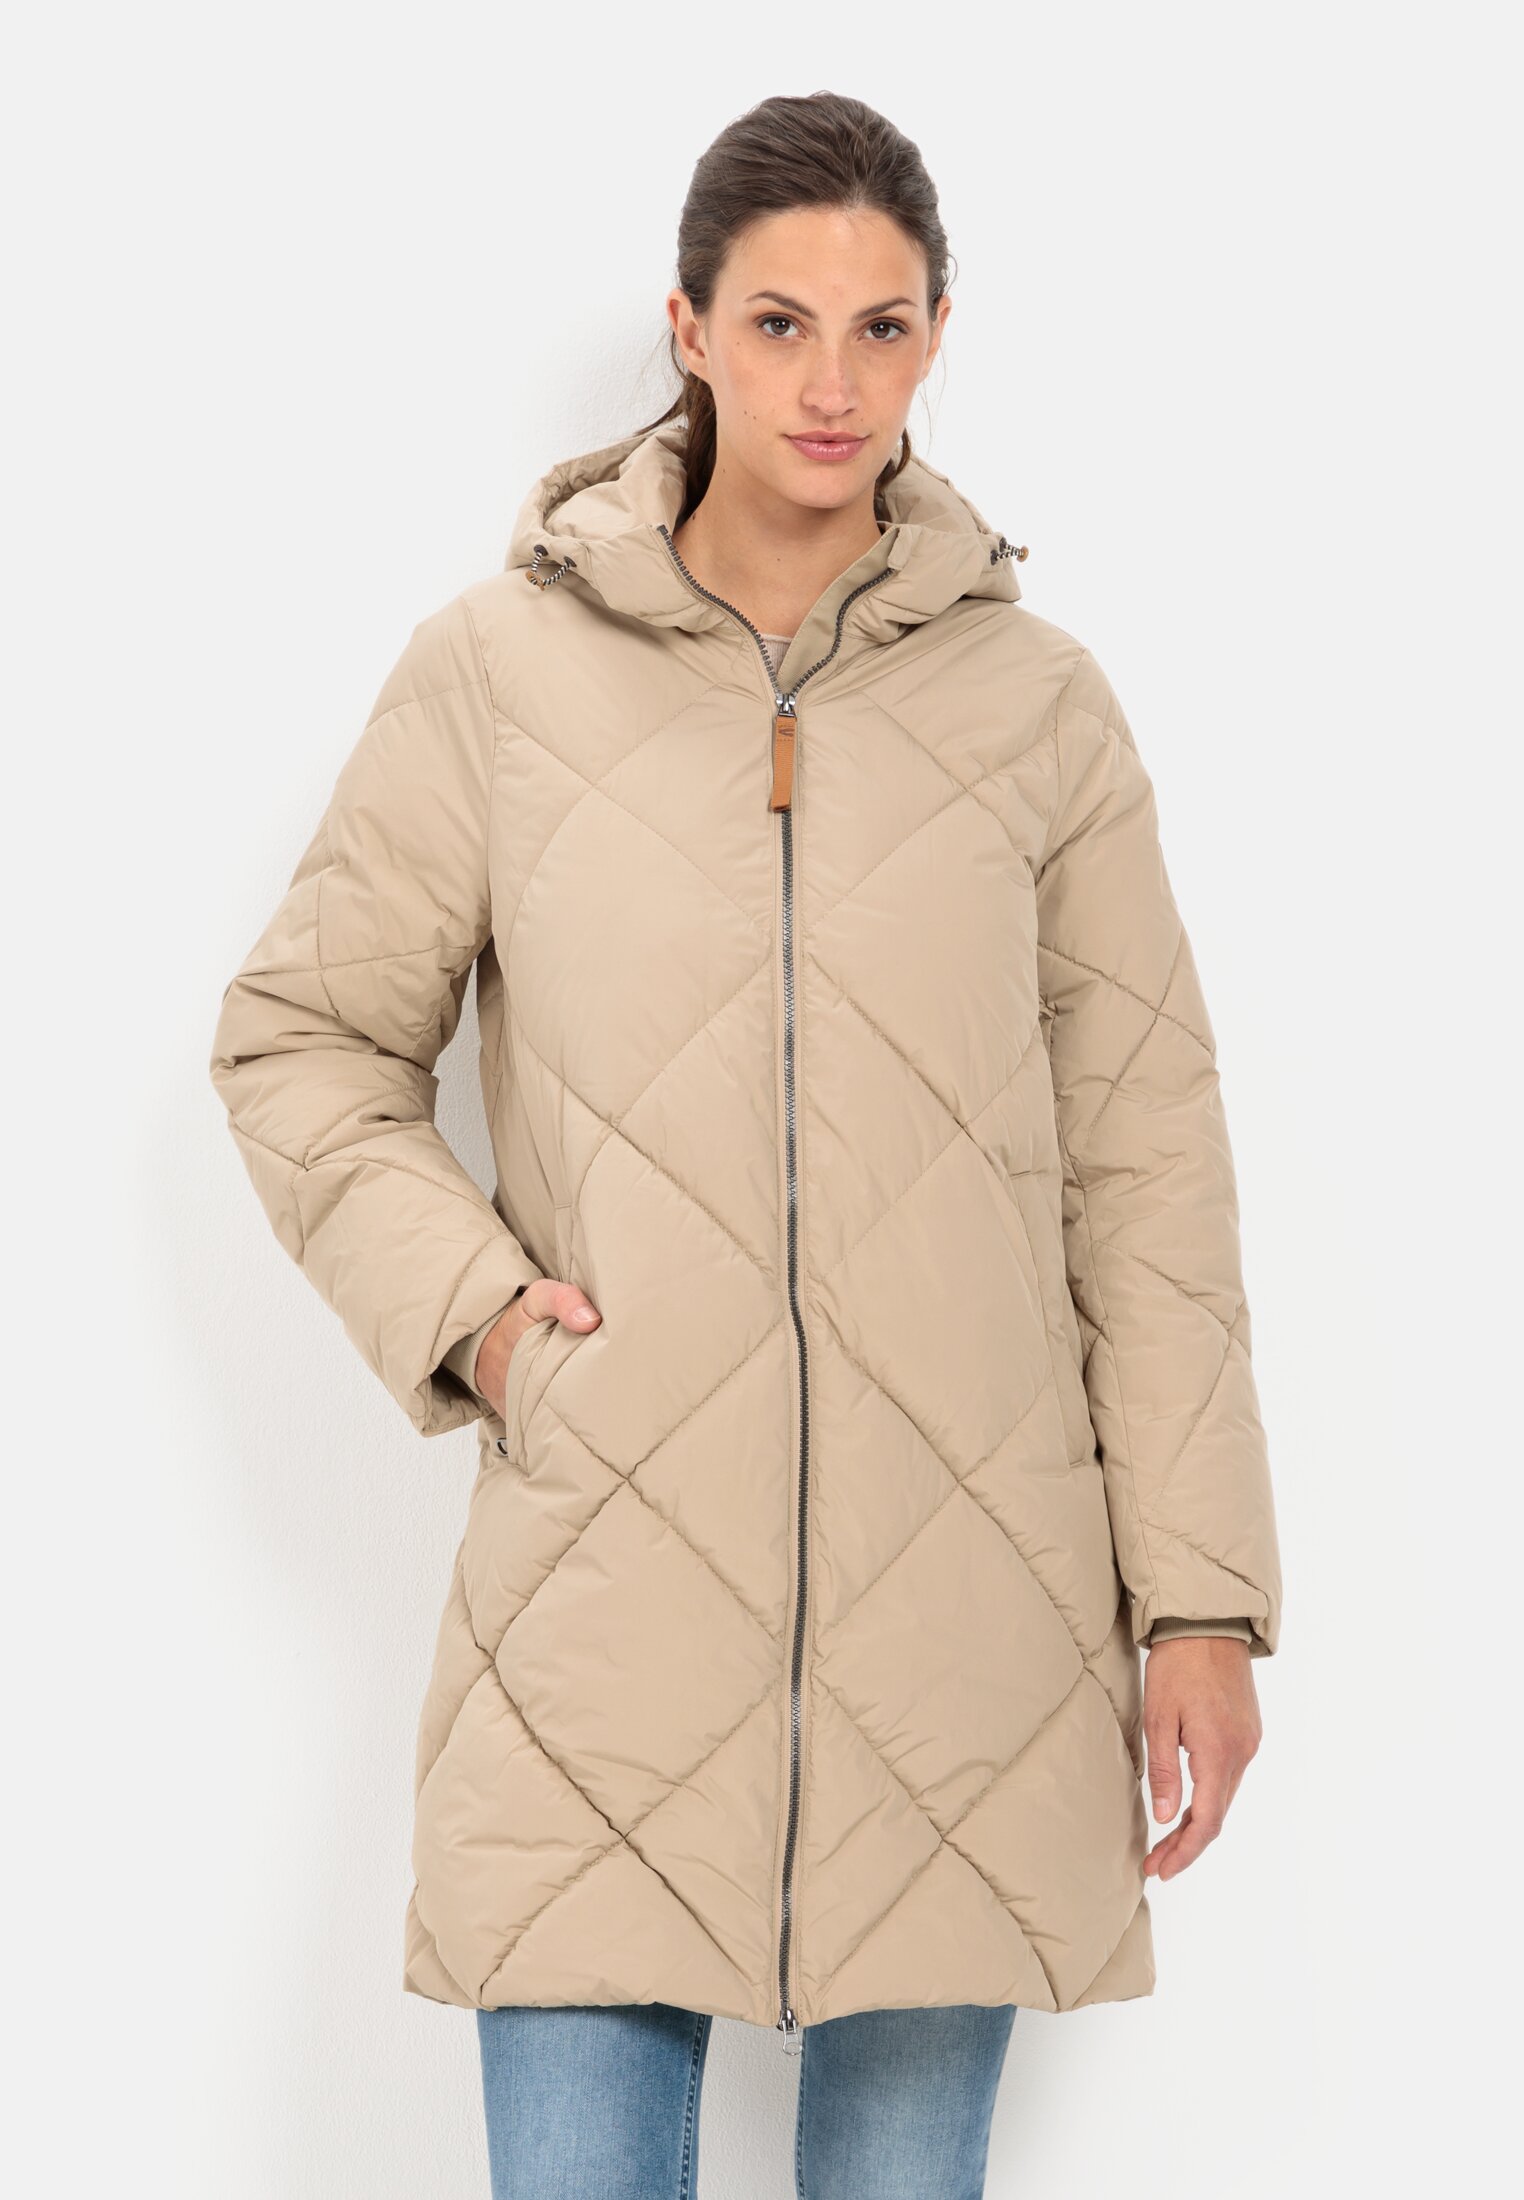 Women\'s winter jackets active camel | online